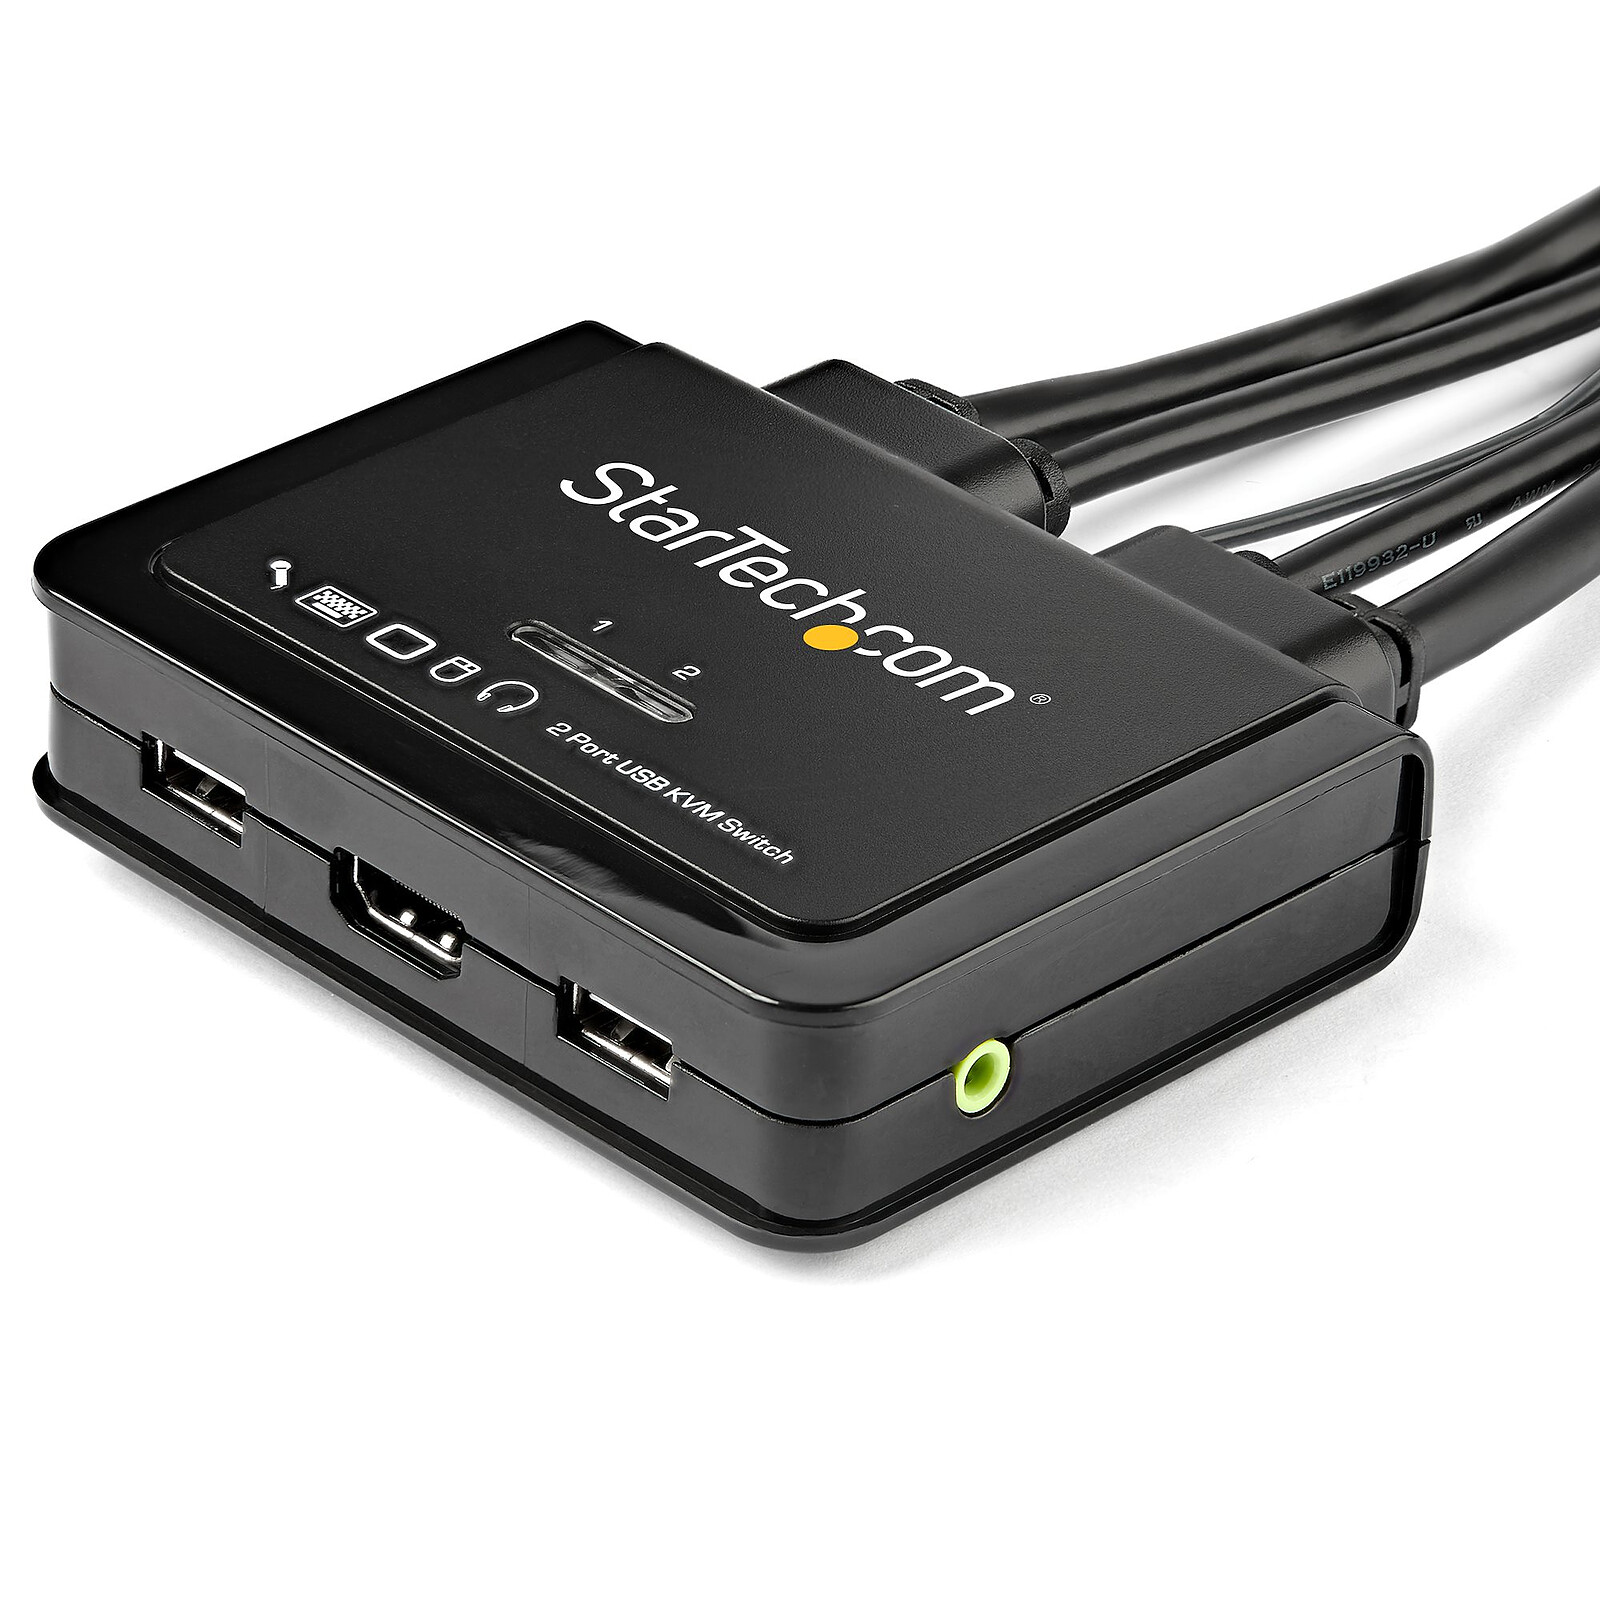 ATEN Commutateur KVM câble HDMI 4K USB 2 ports avec sélecteur de